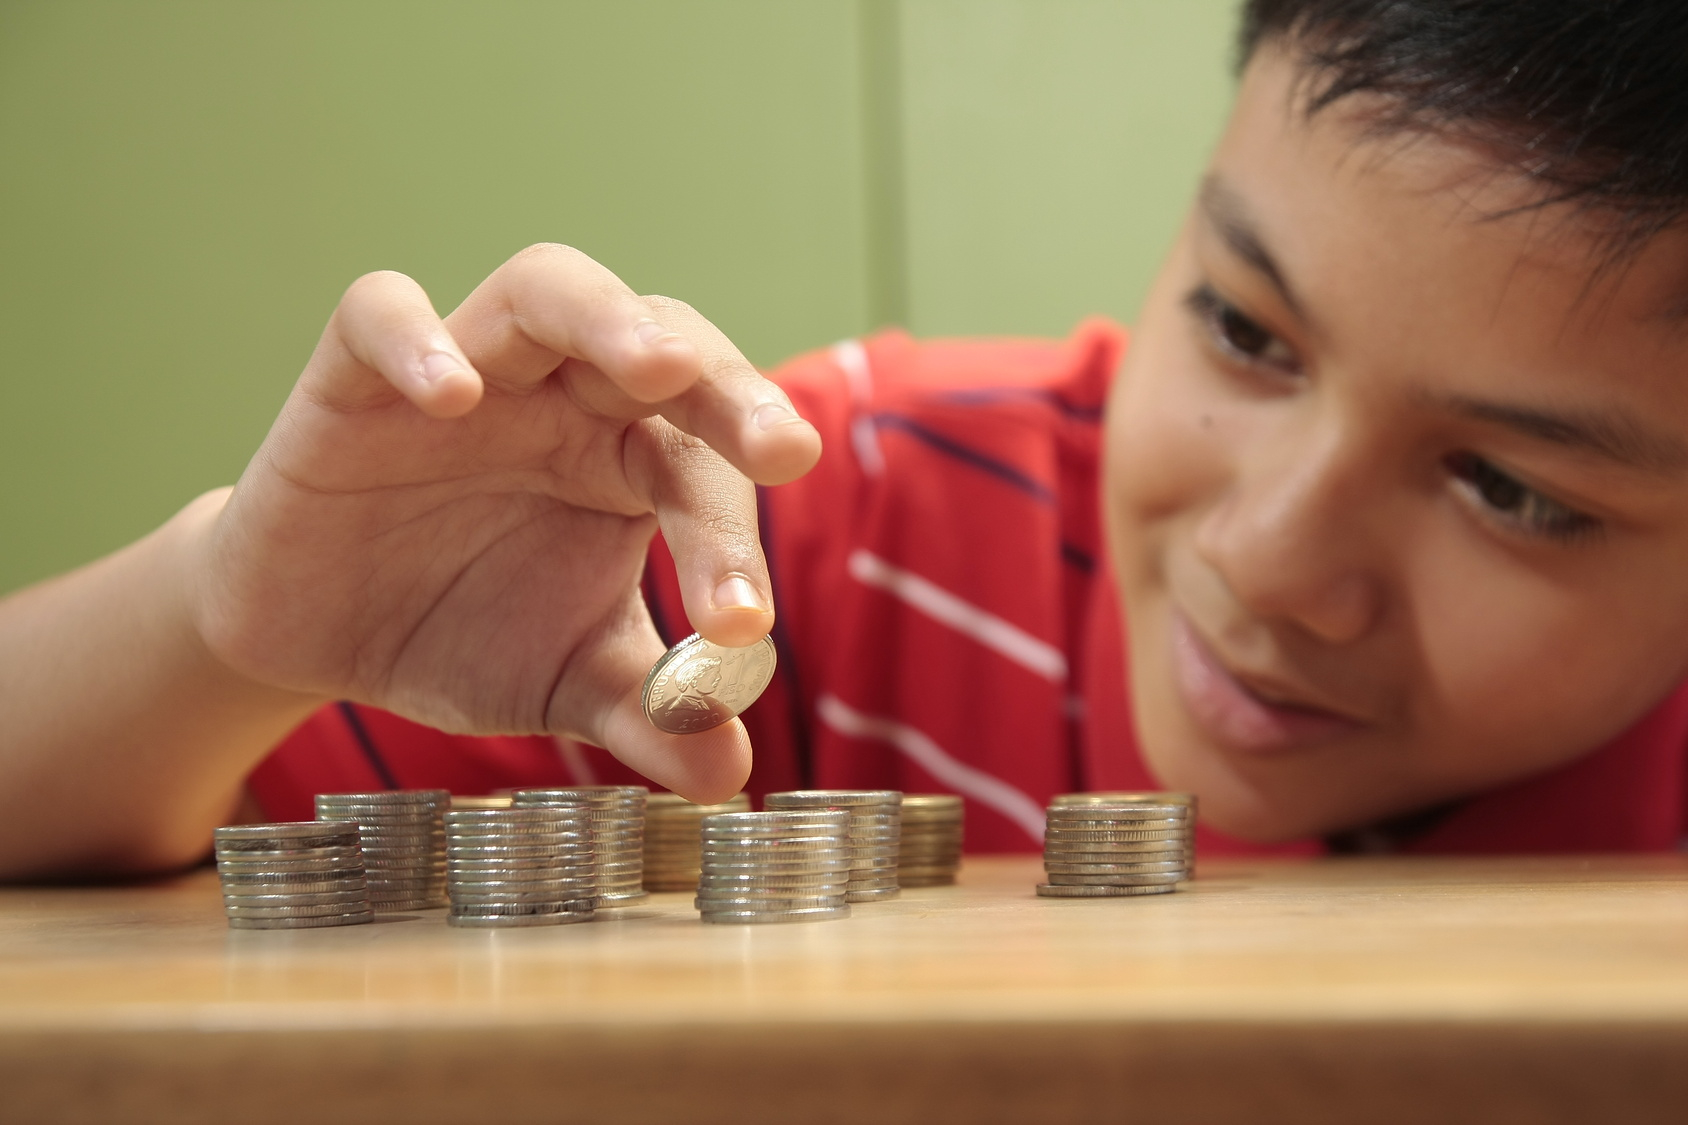 Educação financeira infantil ajuda na formação de mais consciência com uso do dinheiro